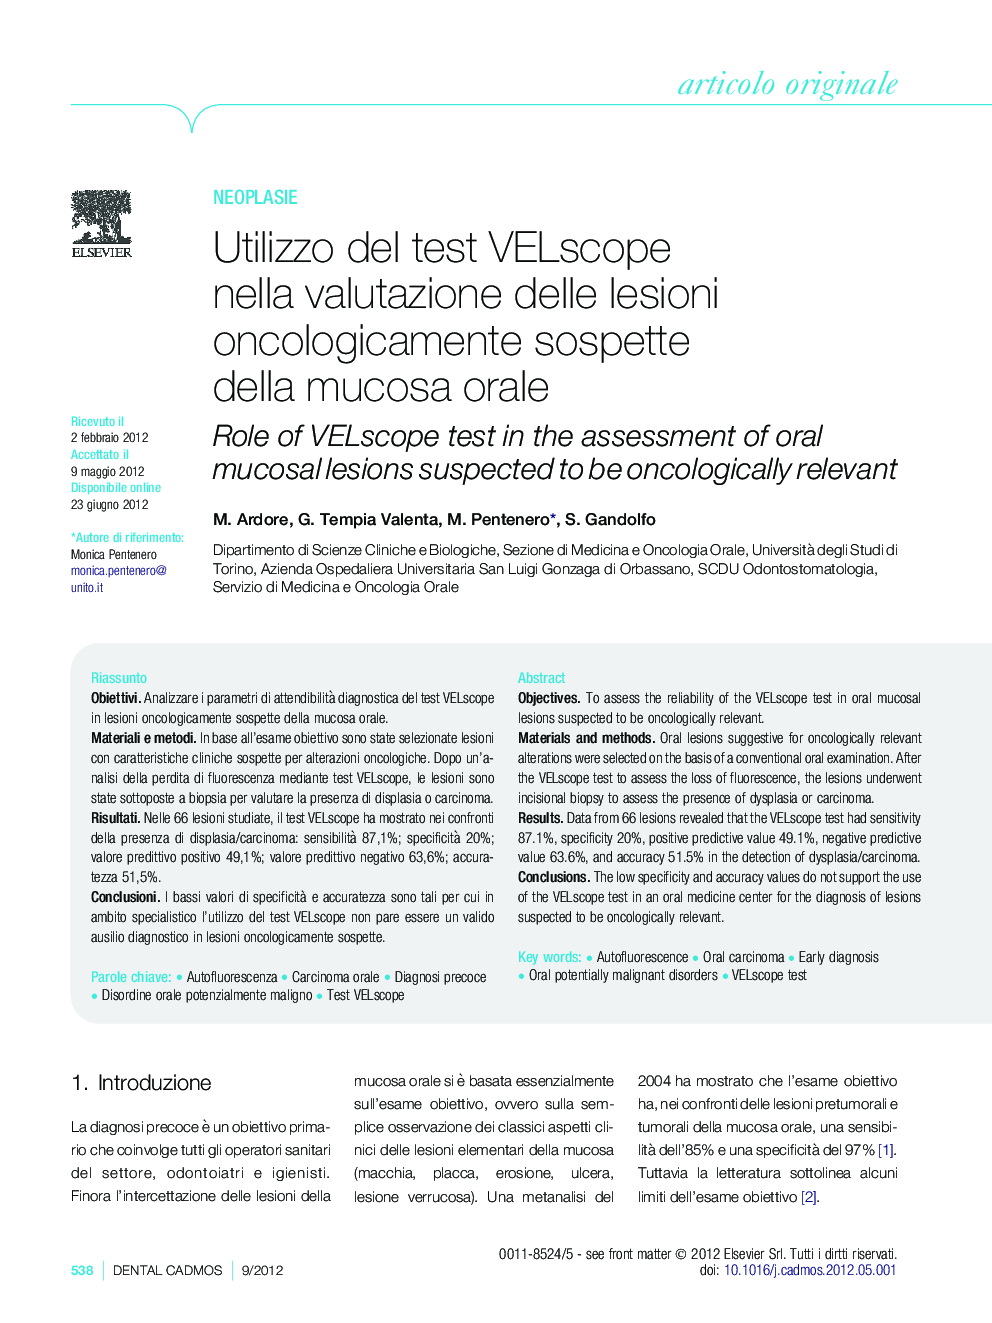 Utilizzo del test VELscope nella valutazione delle lesioni oncologicamente sospette della mucosa orale